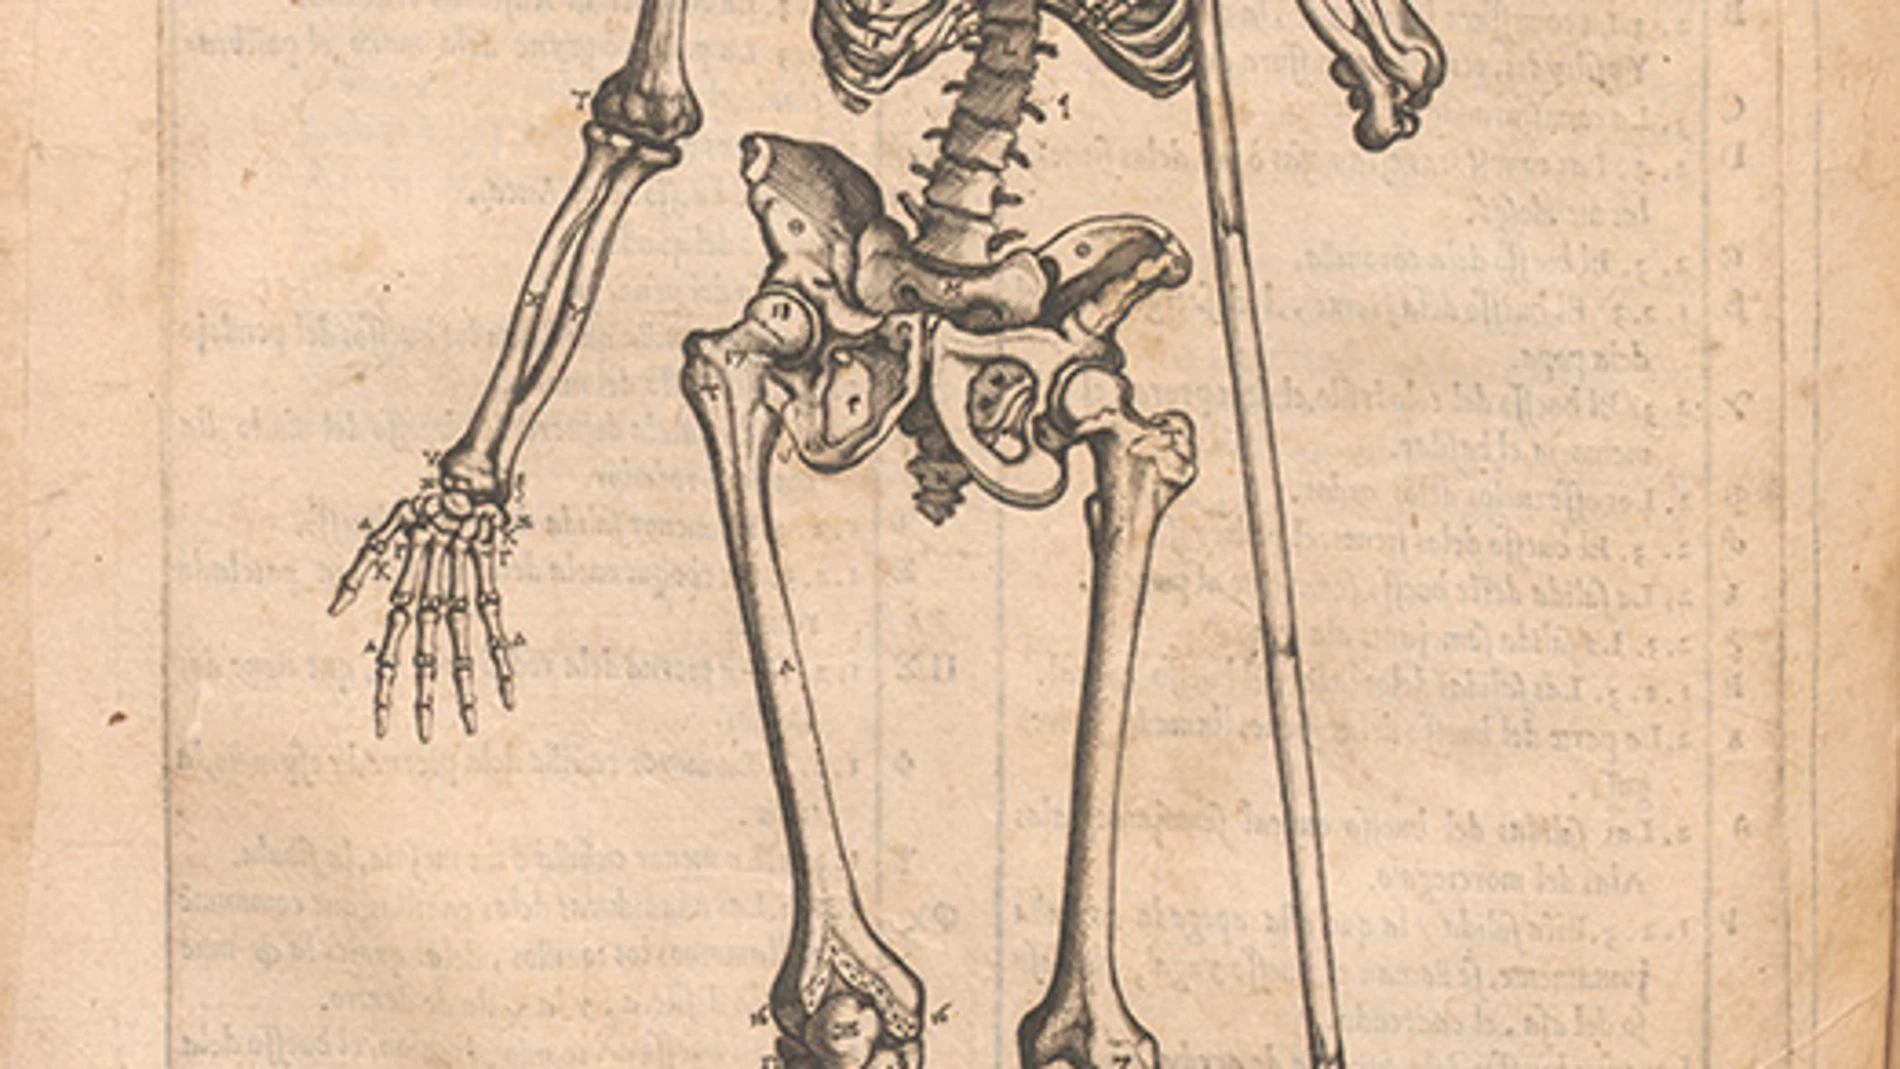 Grabado perteneciente a la "Historia de la composición del cuerpo humano" del doctor Juan Valverde de Amusco. Obra impresa en 1556 en Roma.